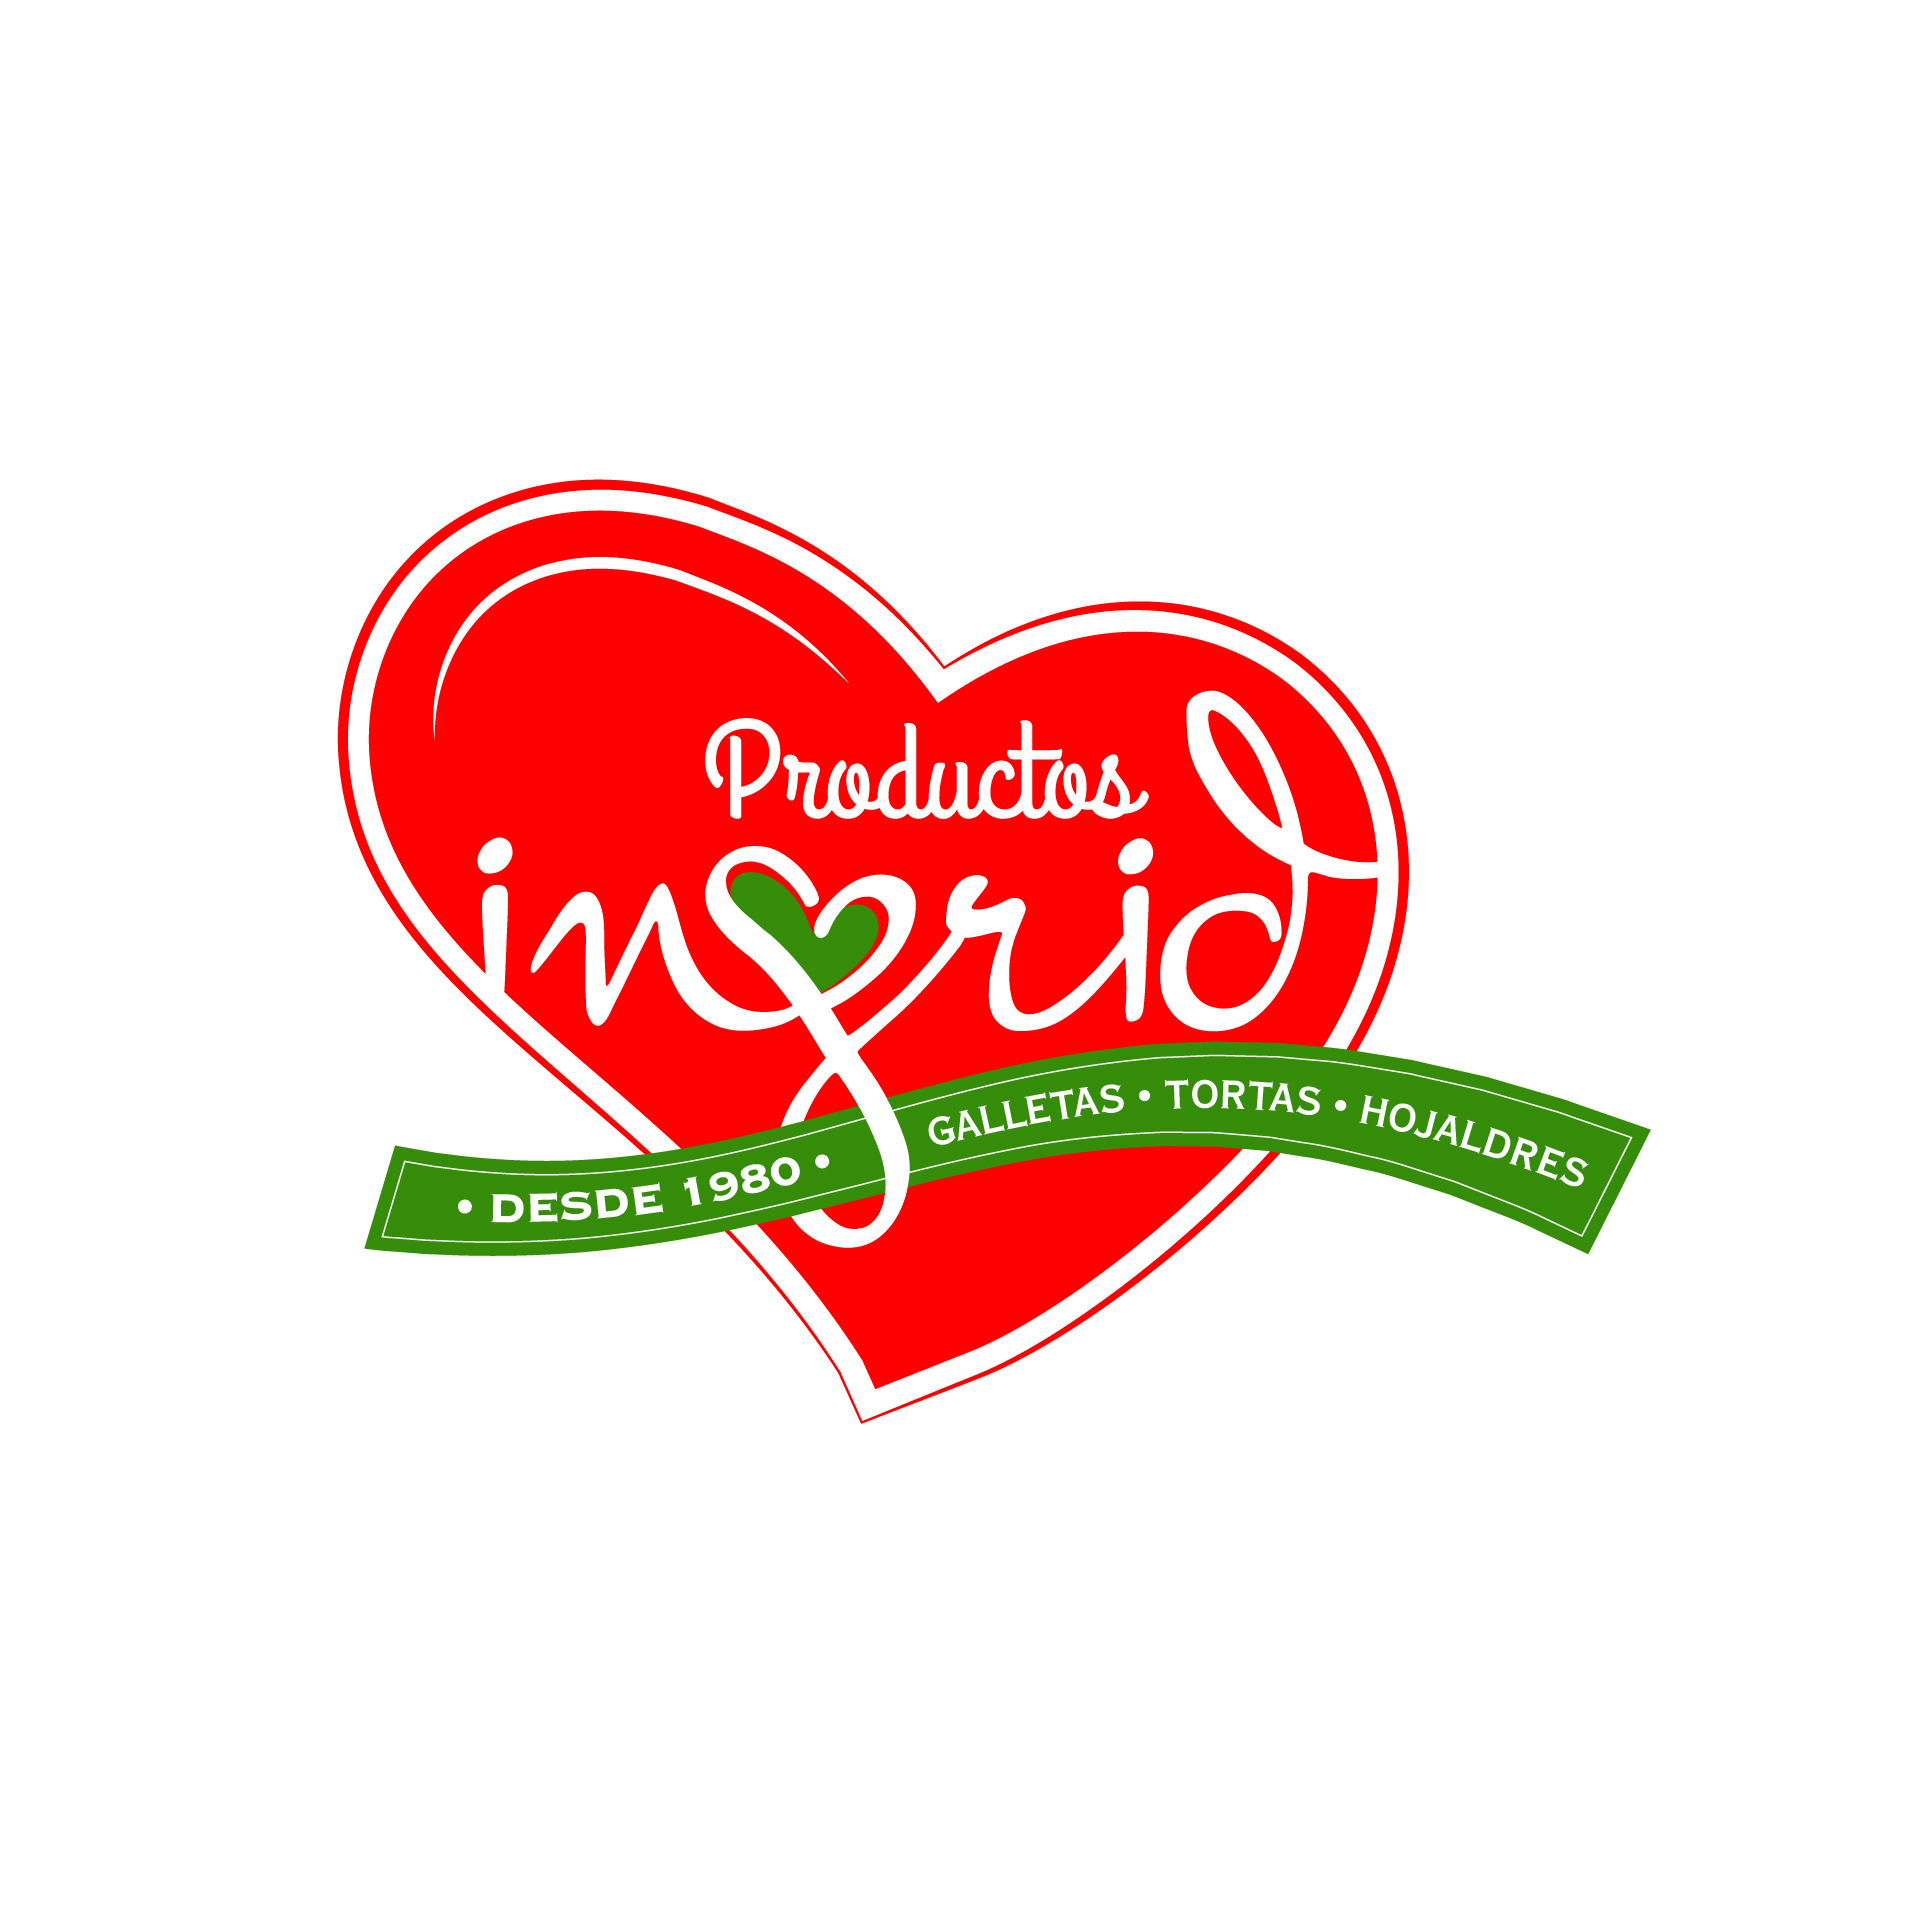 Logotipo para marca de productos de pasteleria y reposteria Productos Ingrid